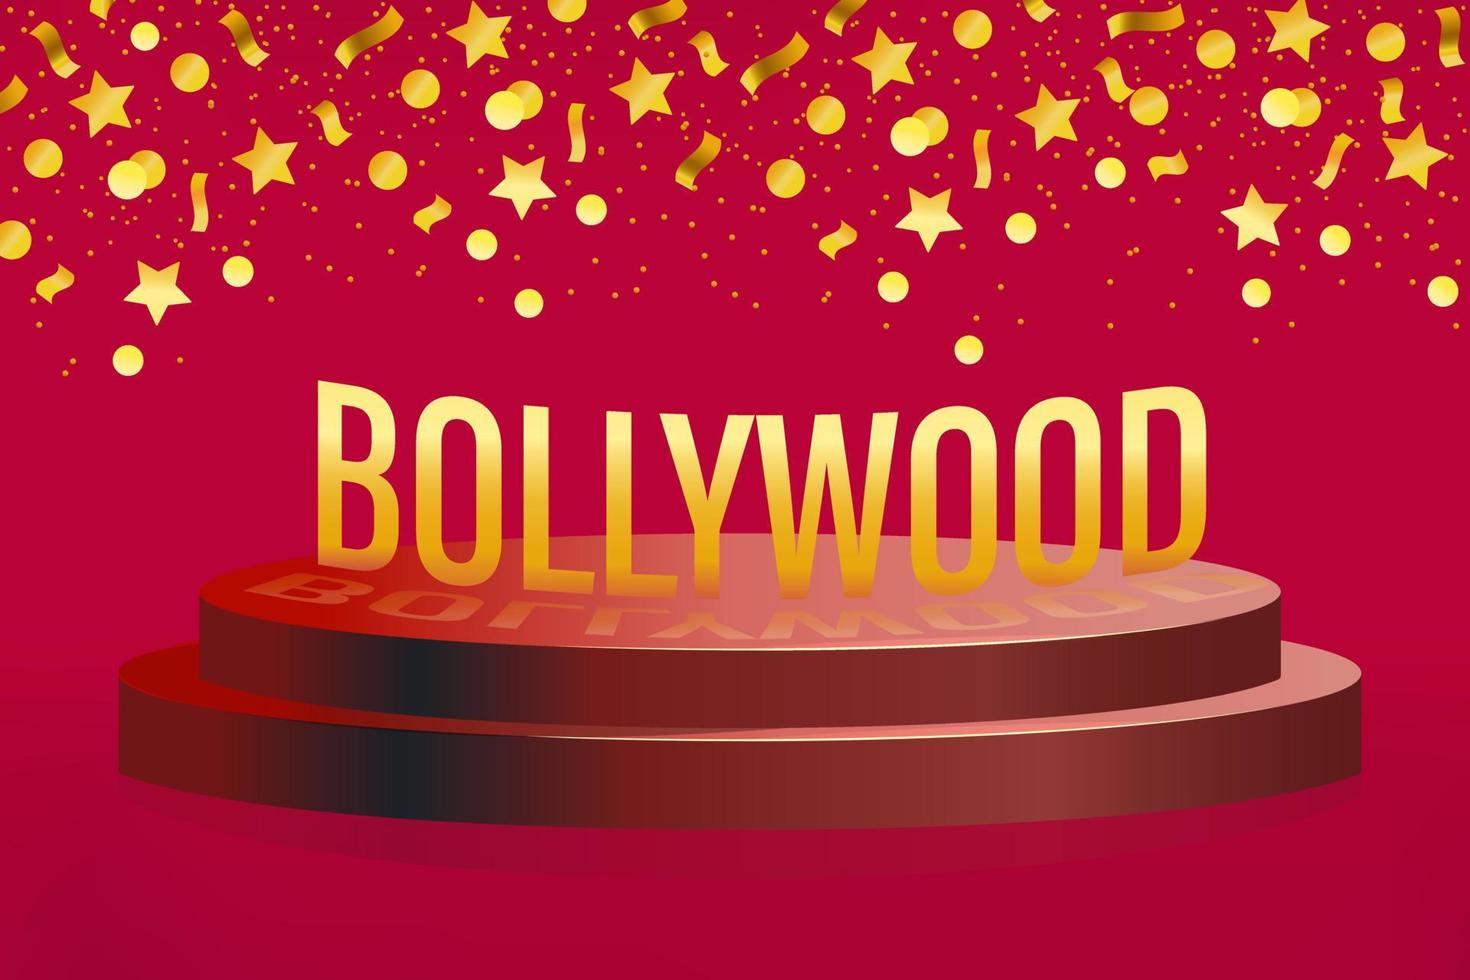 cine indio bollywood. estilo 3d podio con círculos, estrellas, cintas sobre un fondo rojo. diseño de oro ilustración vectorial vector